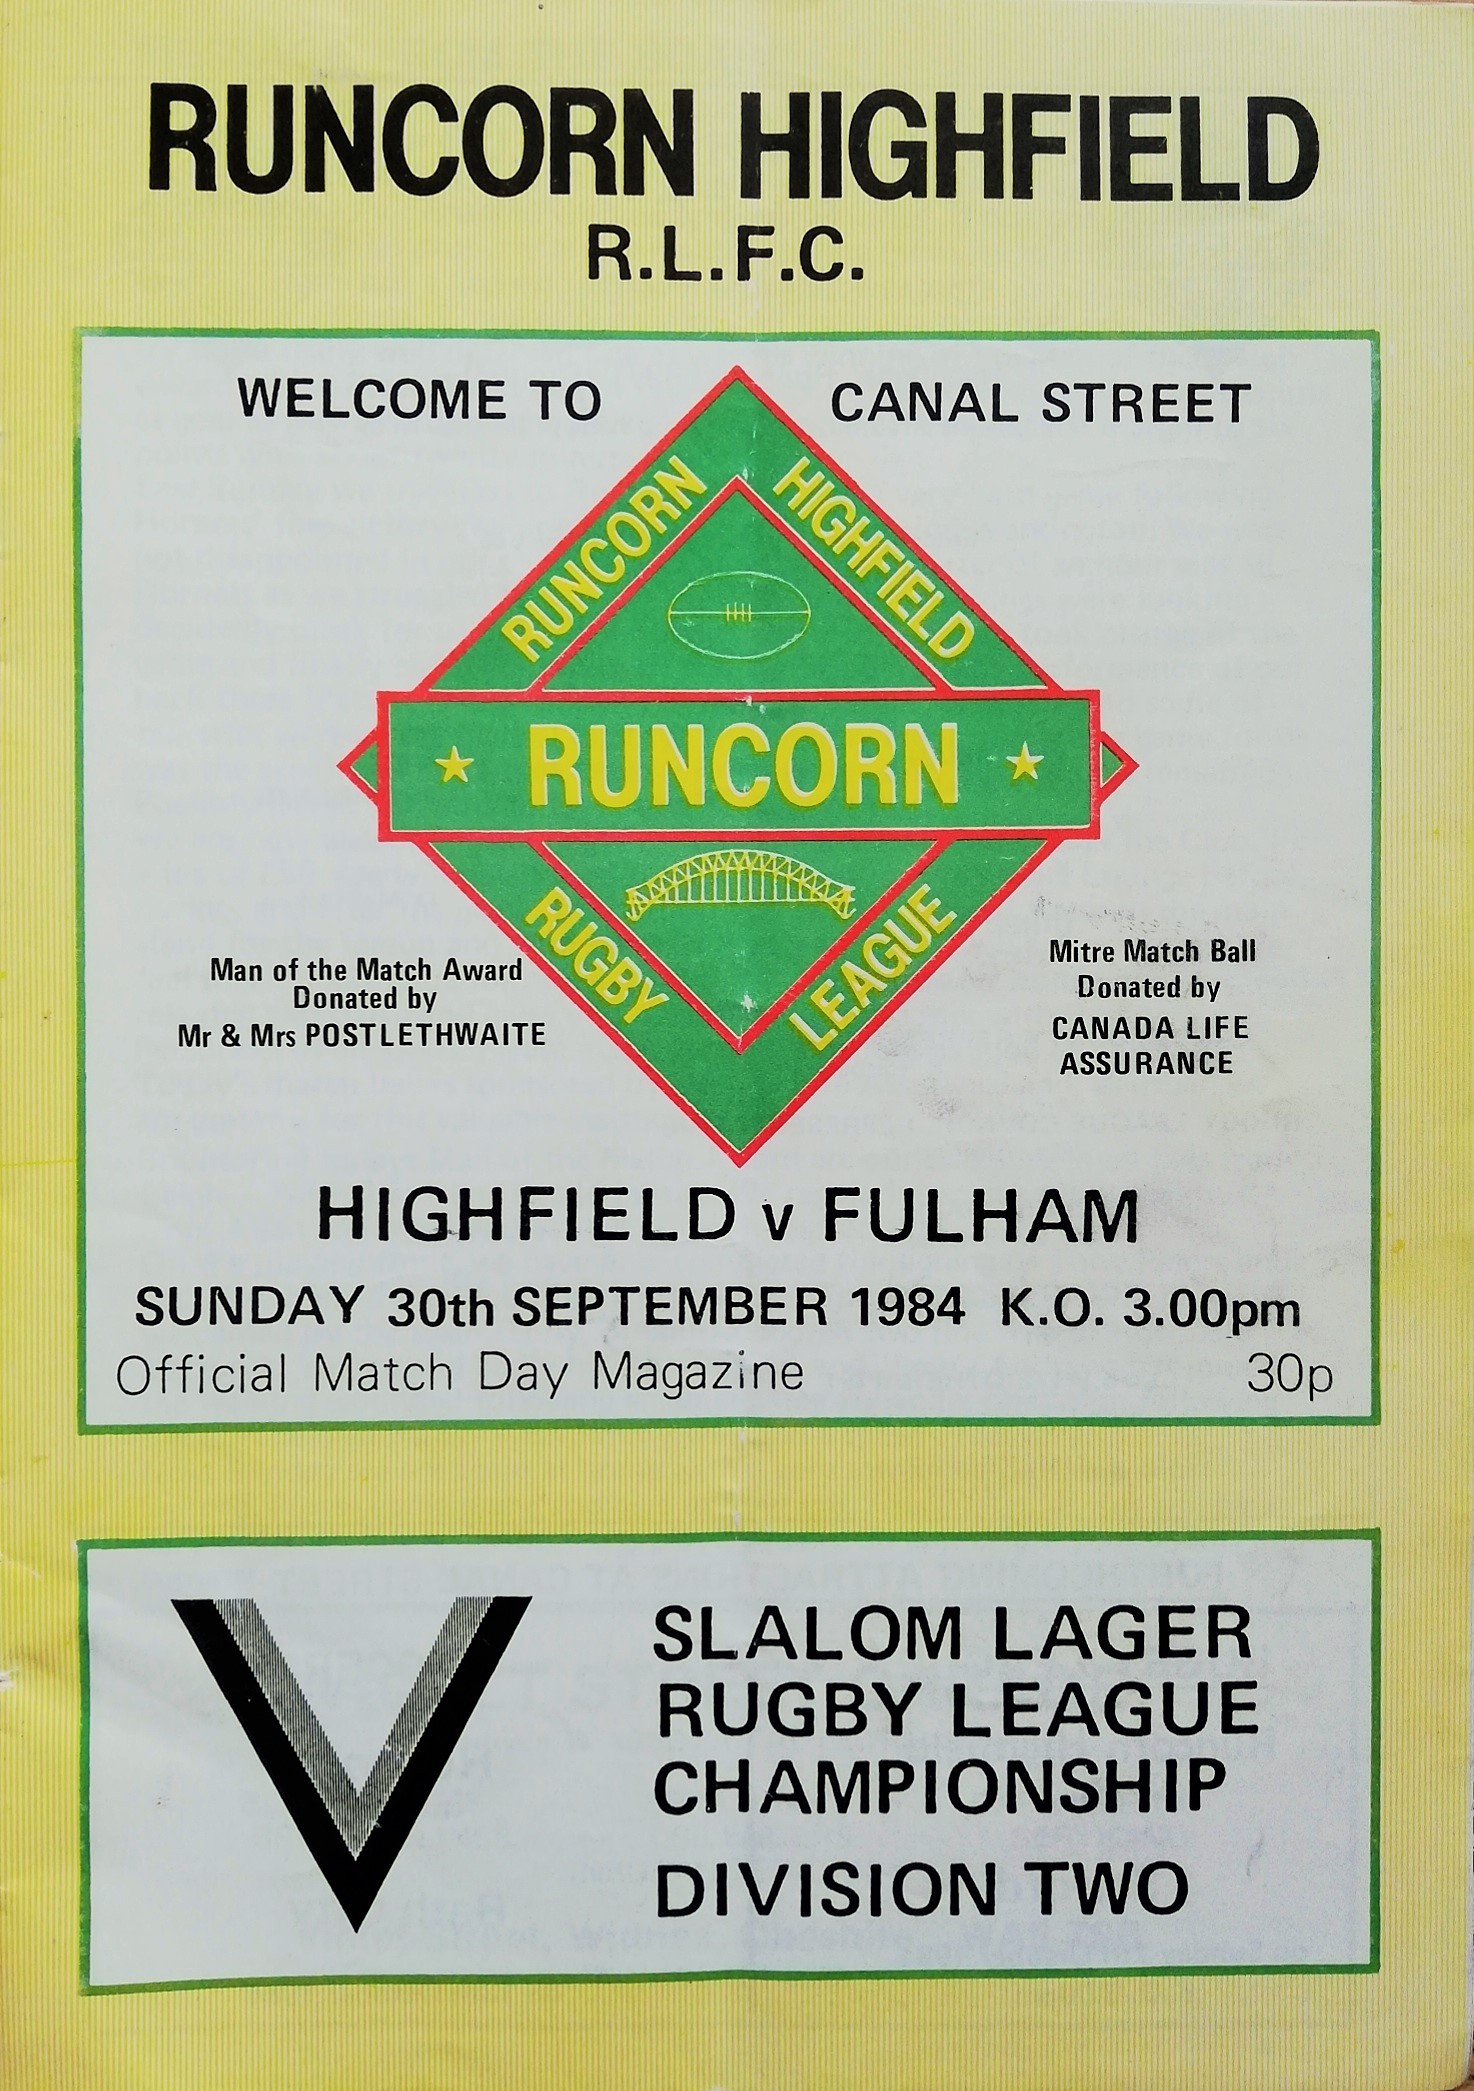 runcorn-highfield-rugby-league-programmes